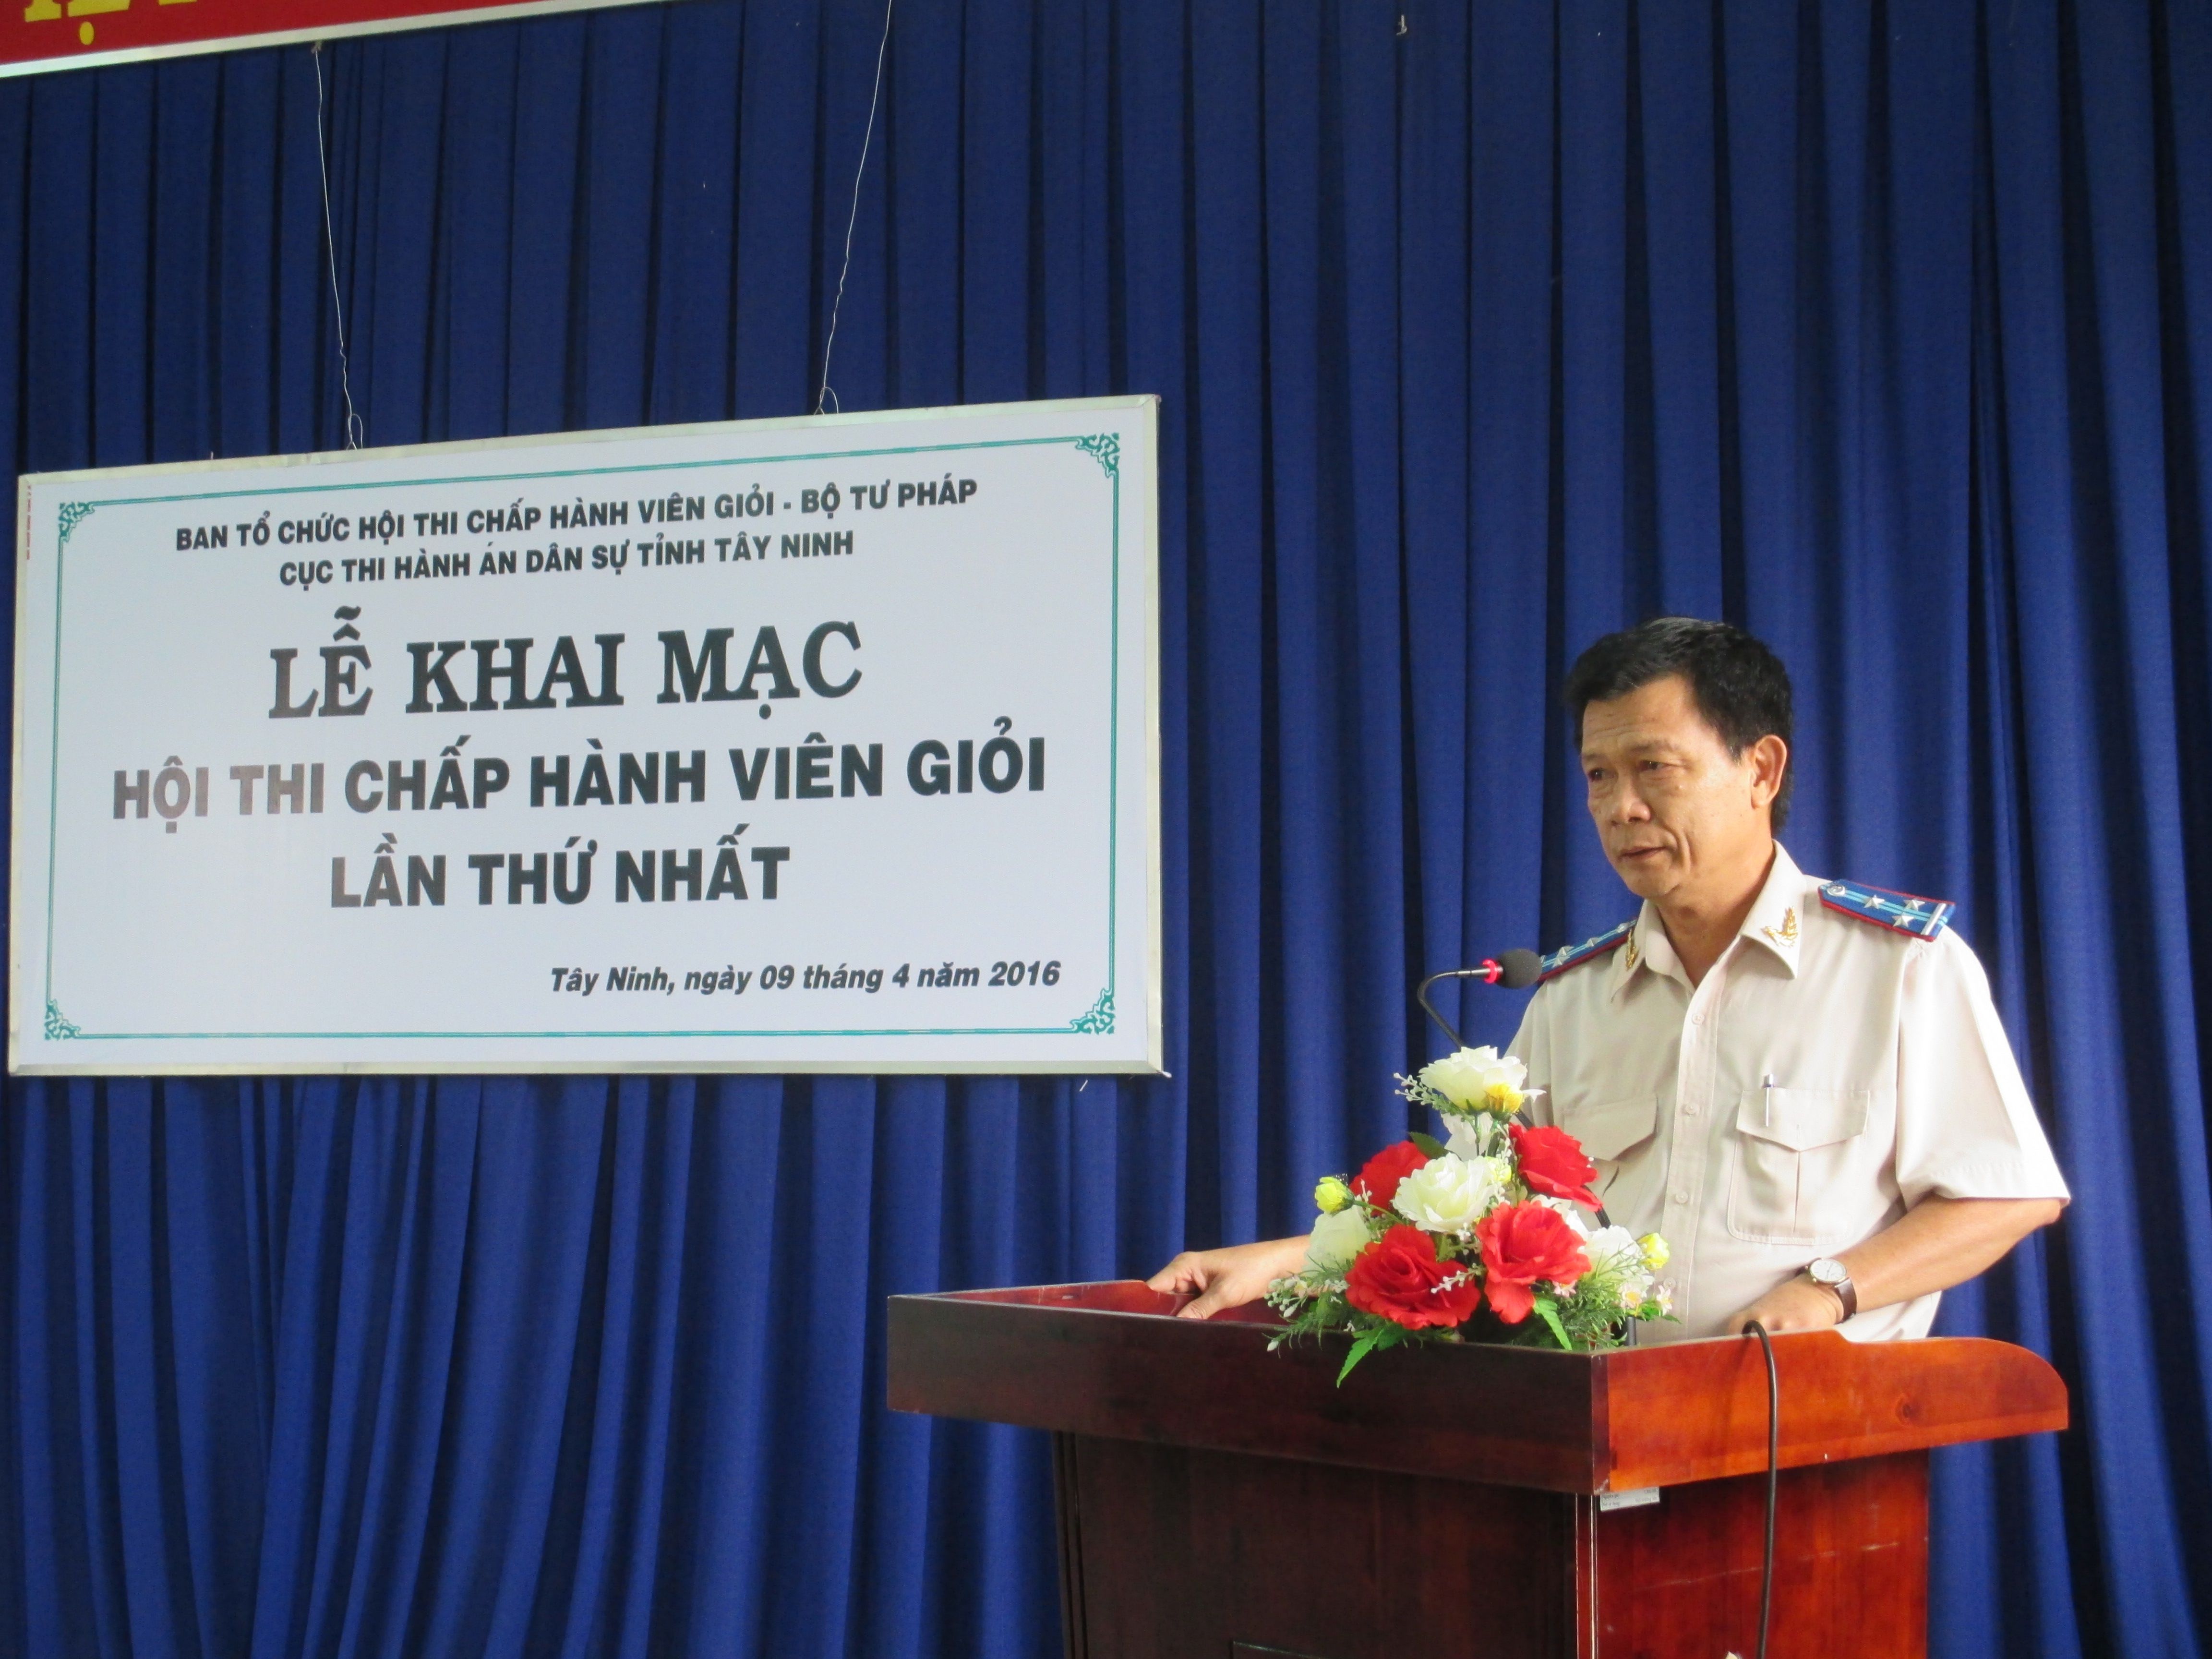 Cục Thi hành án dân sự tỉnh Tây Ninh tổ chức Hội thi Chấp hành viên giỏi lần thứ nhất